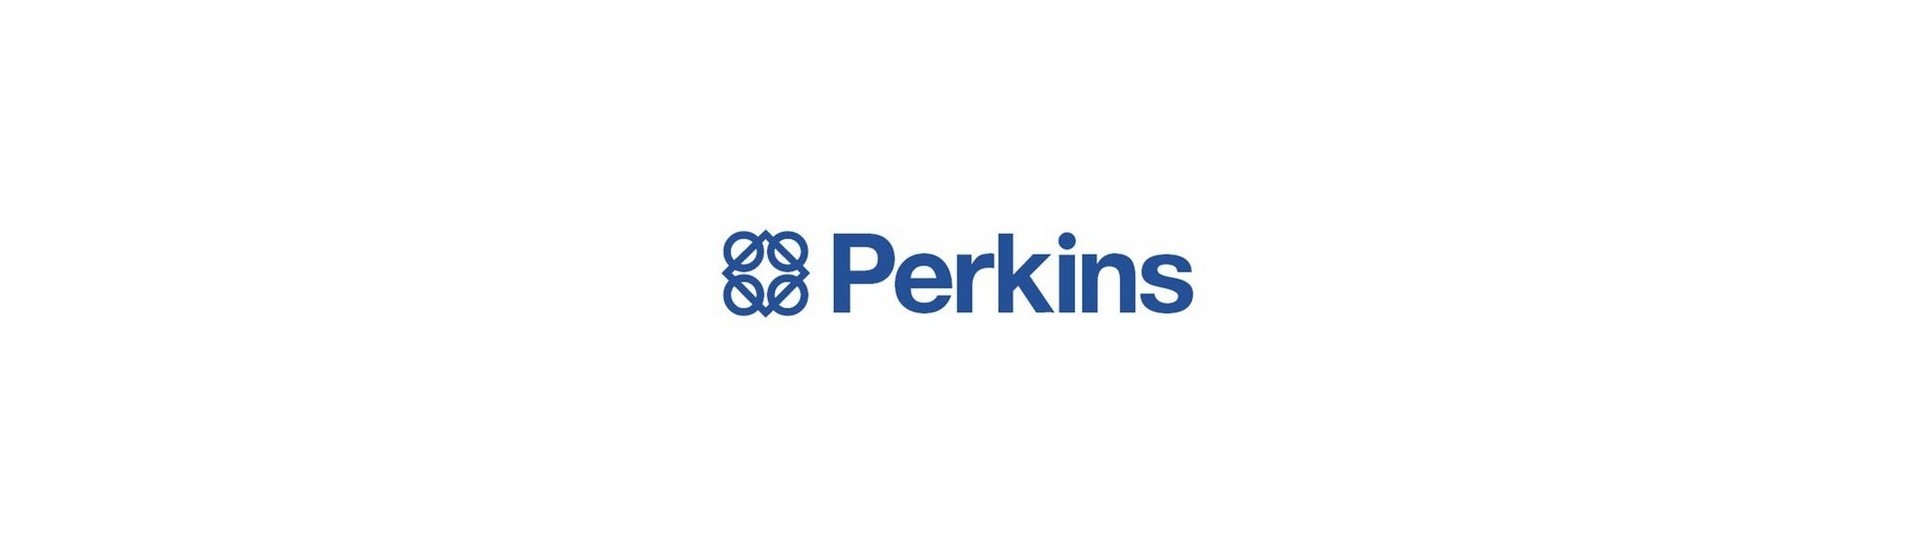 Kynttilän ennustaminen parhaalla hinnalla ilman lupaa Perkins